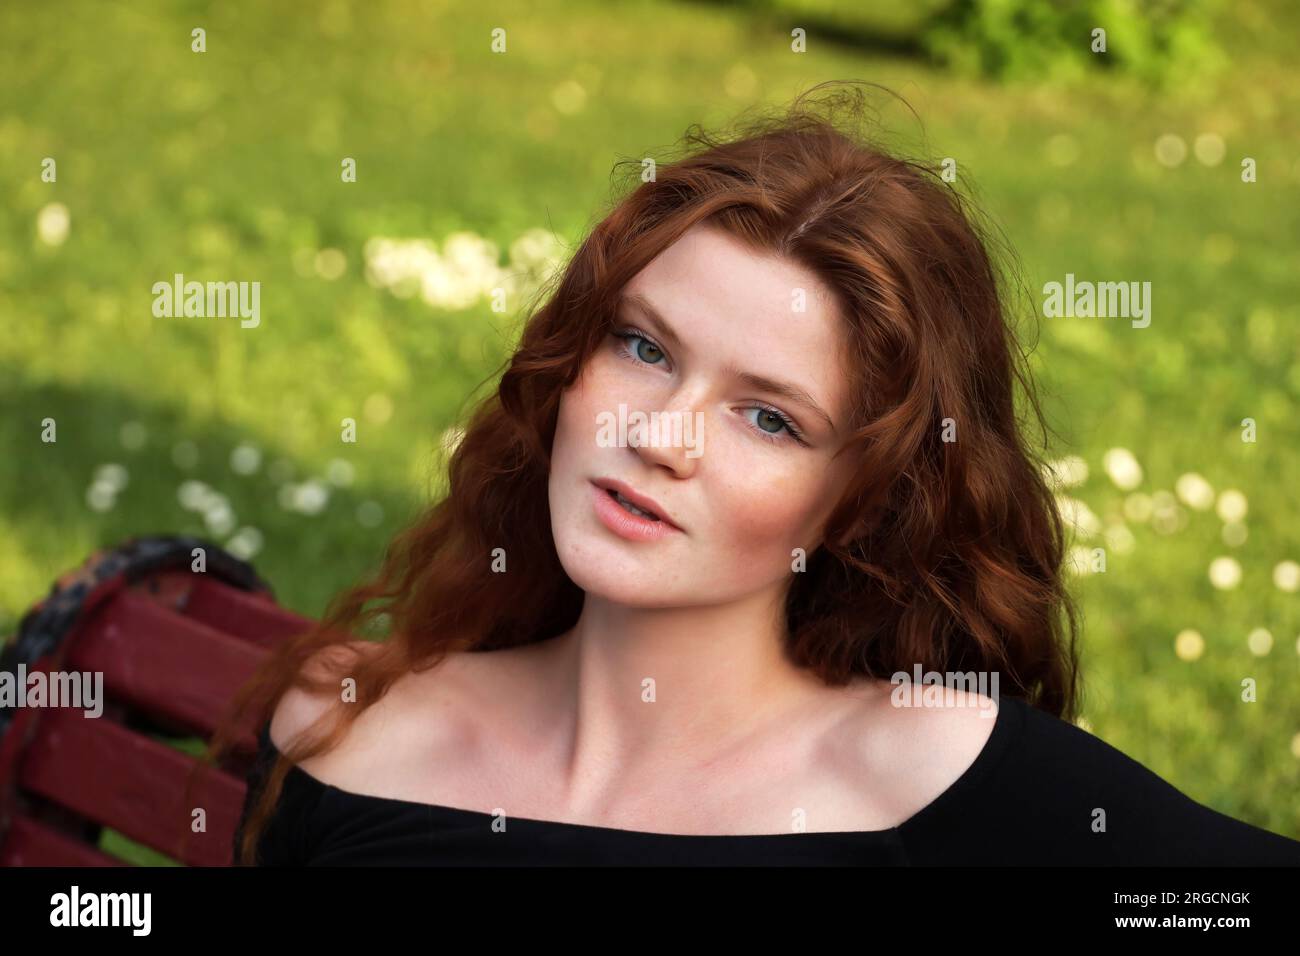 Attraktives Mädchen mit langen roten Haaren, das auf einer Bank im Sommerpark sitzt. Ein junges sinnliches Modell, weibliche Schönheit Stockfoto